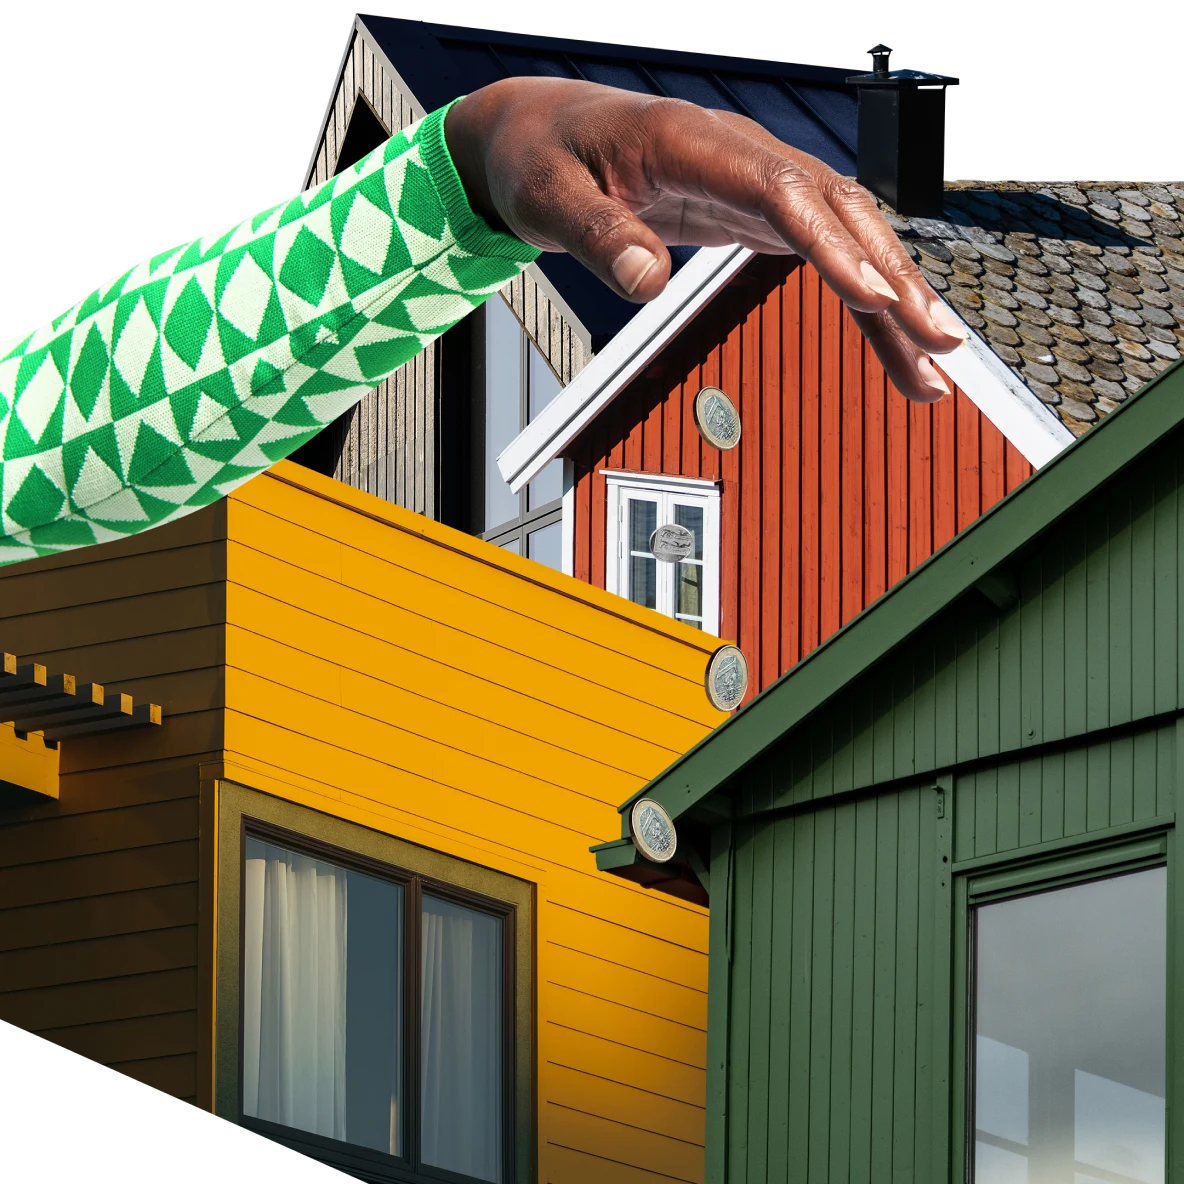 Collage de frentes de casas de color marrón, rojo, amarillo y verde. Una mano de piel oscura y mangas cuadriculadas se eleva sobre ellos en el fondo.